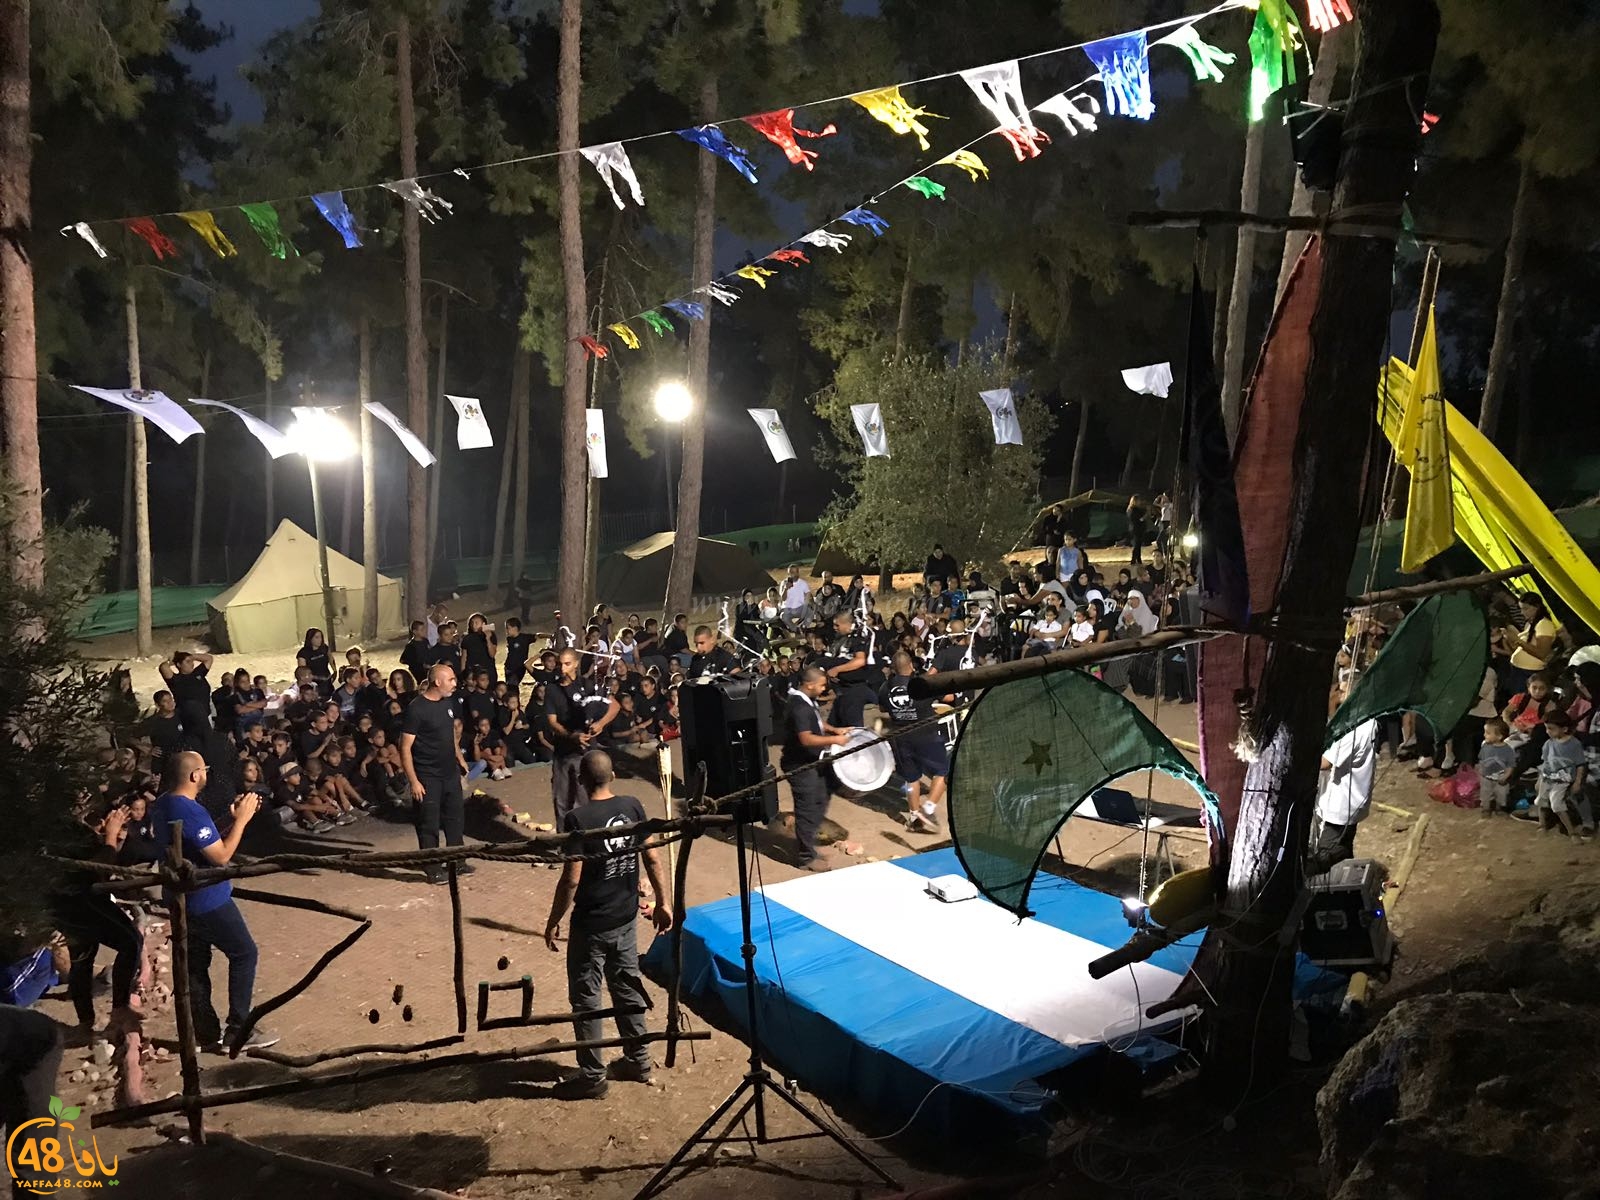   بالصور: اختتام فعاليات المخيم الصيفي للنادي الاسلامي بيافا في شمال البلاد 